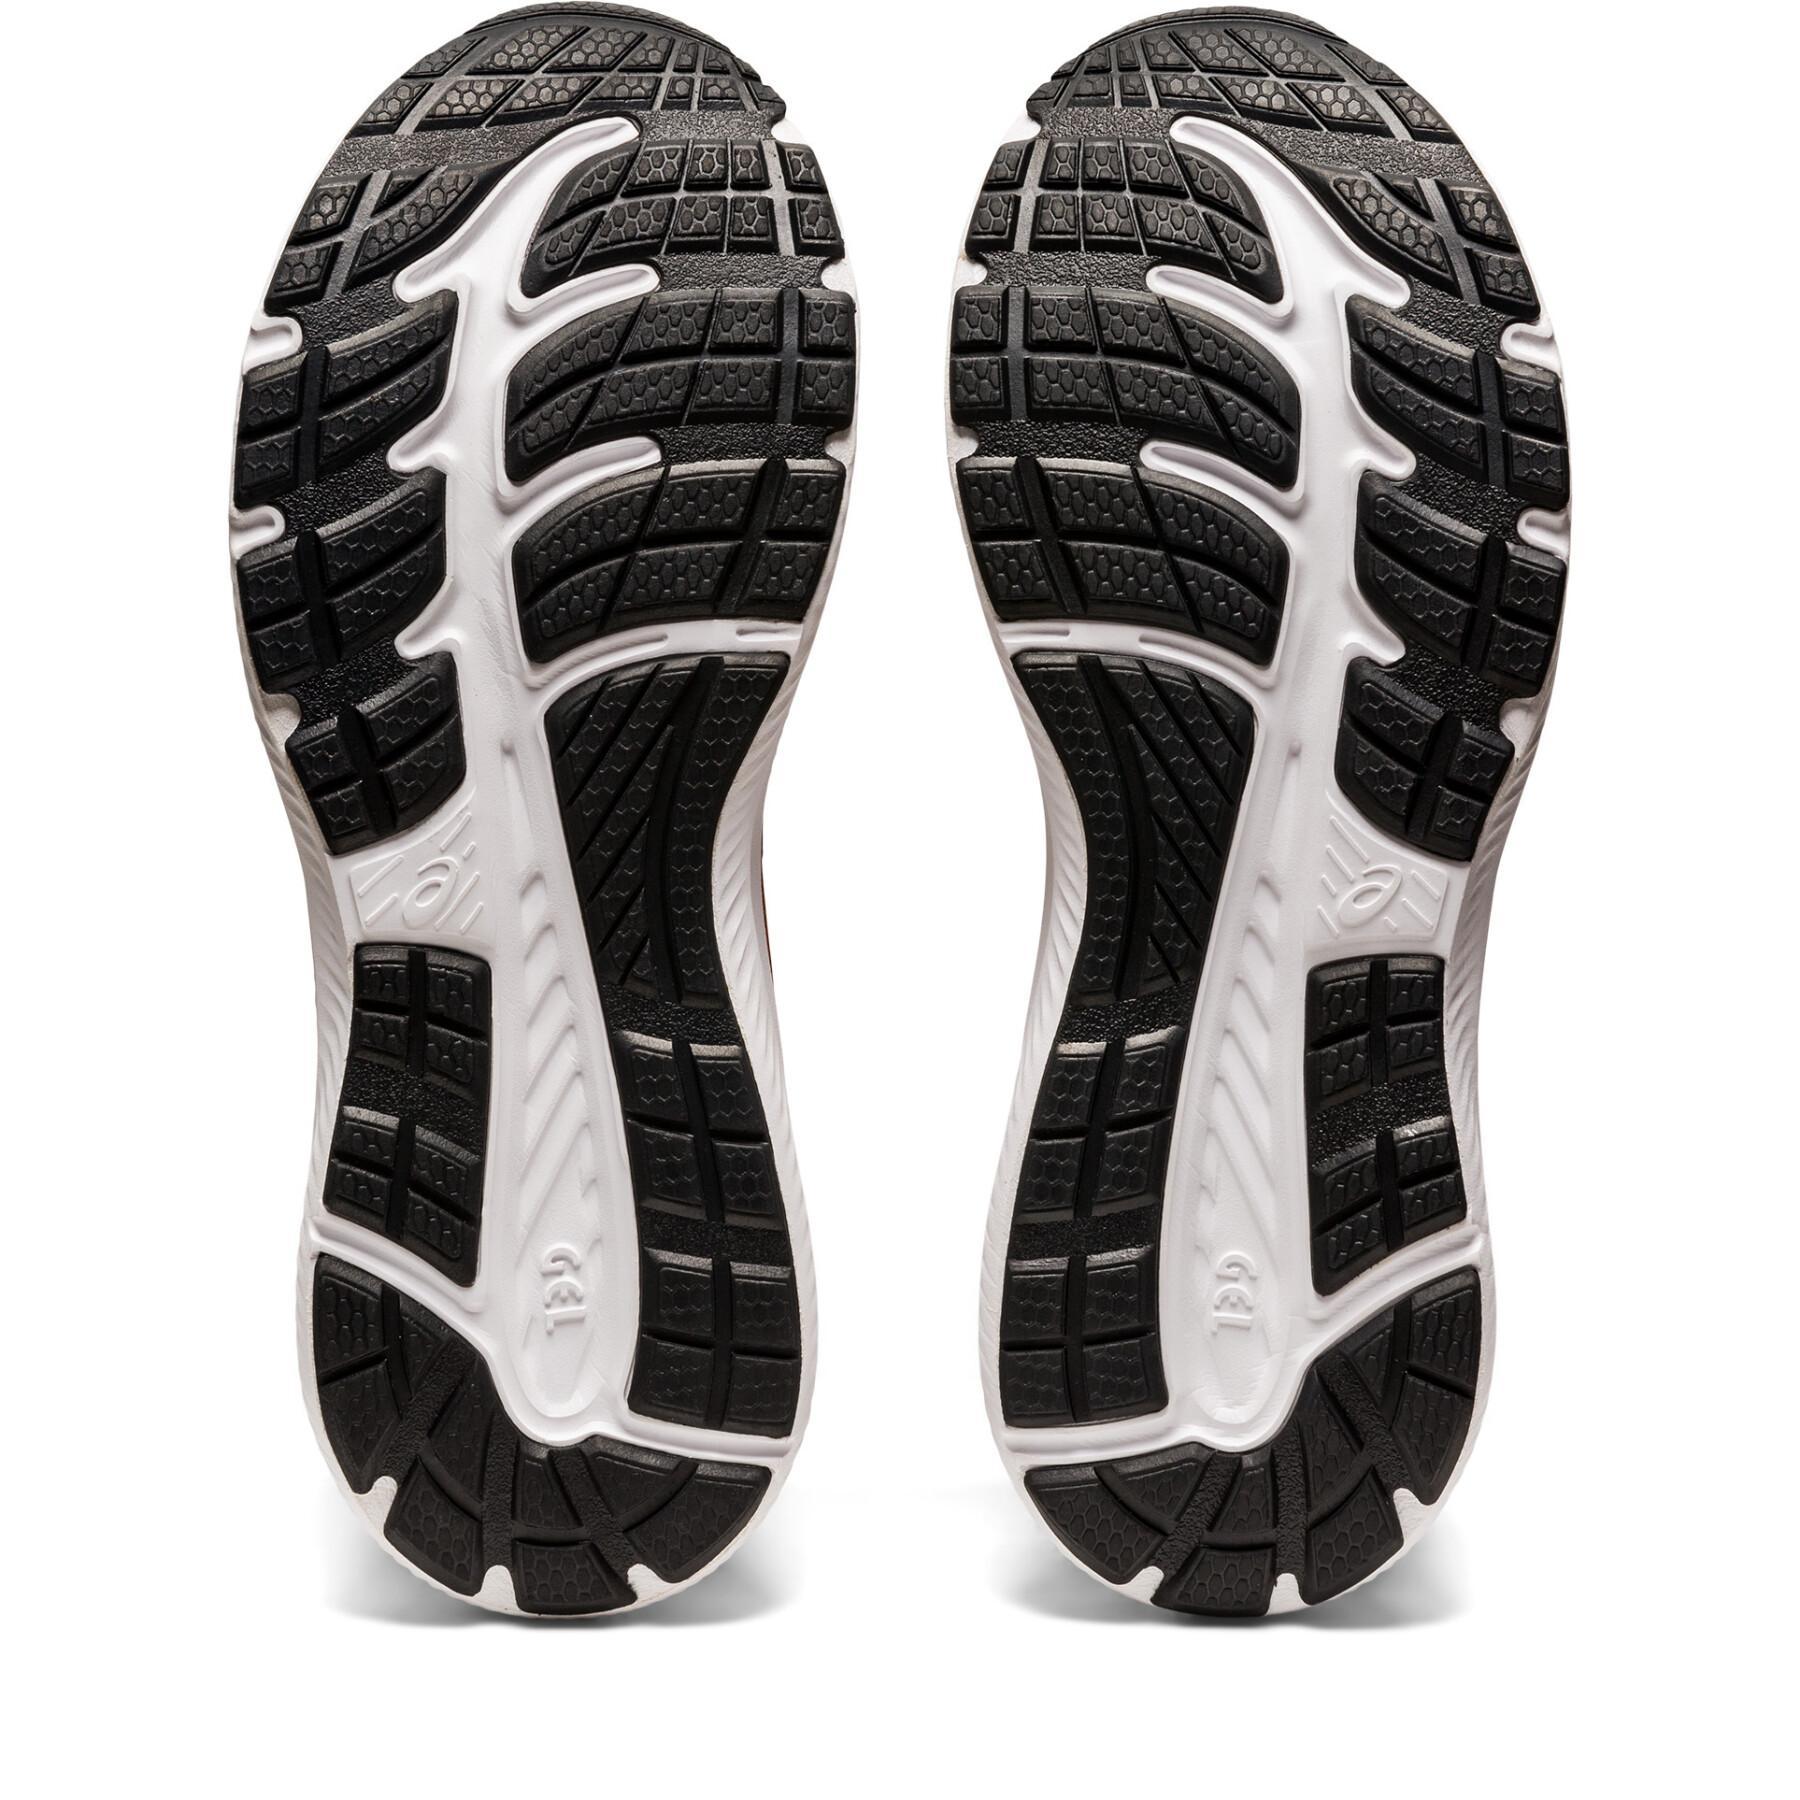 Zapatillas para correr Asics Gel-Contend 8